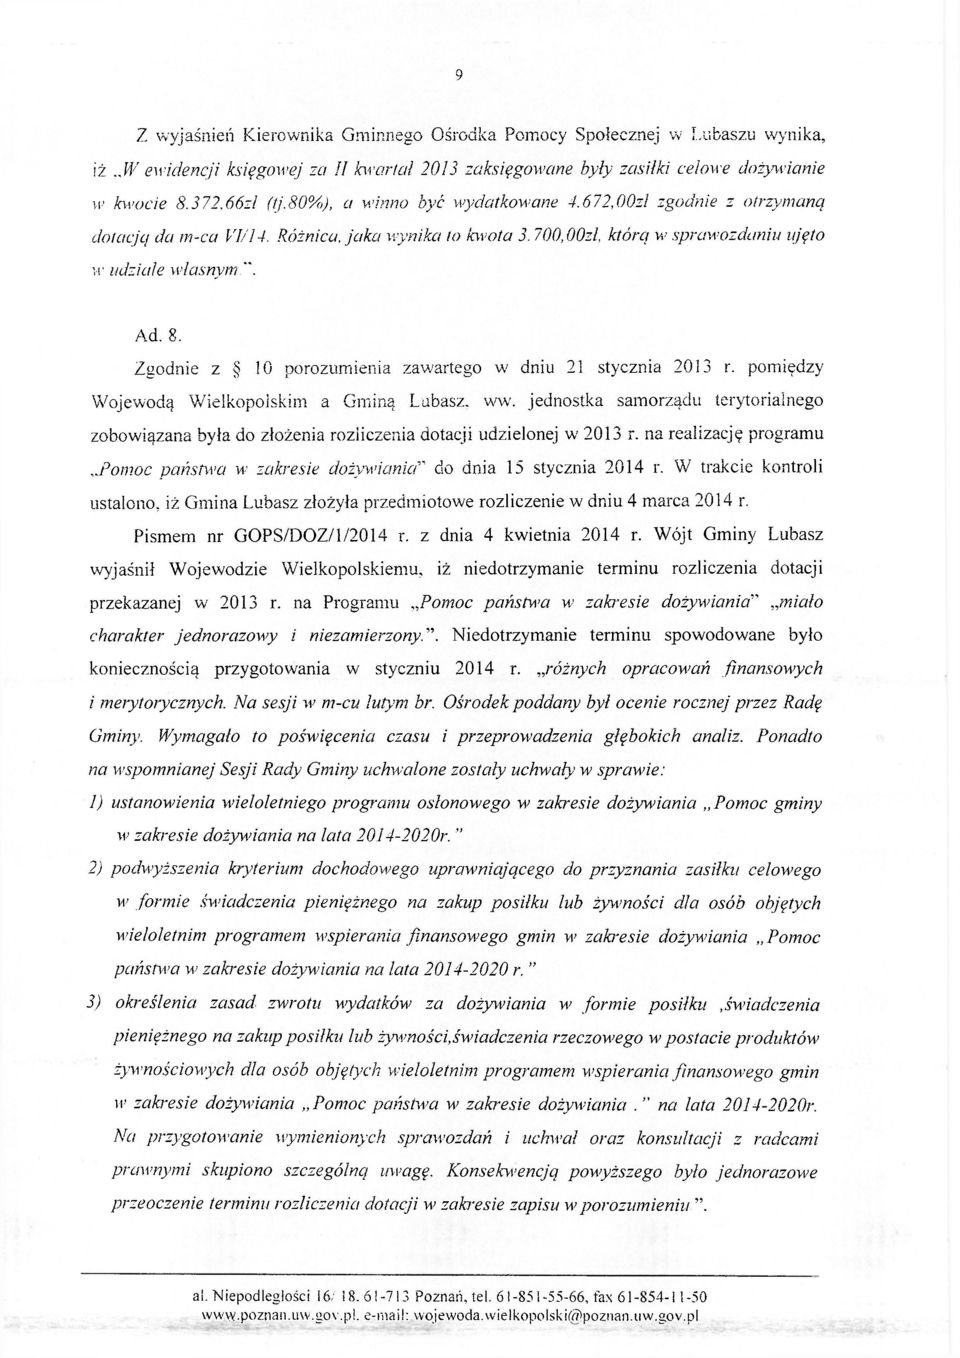 Zgodnie z 10 porozumienia zawartego w dniu 21 stycznia 2013 r. pomiędzy Wojewodą Wielkopolskim a Gminą Lubasz, ww.